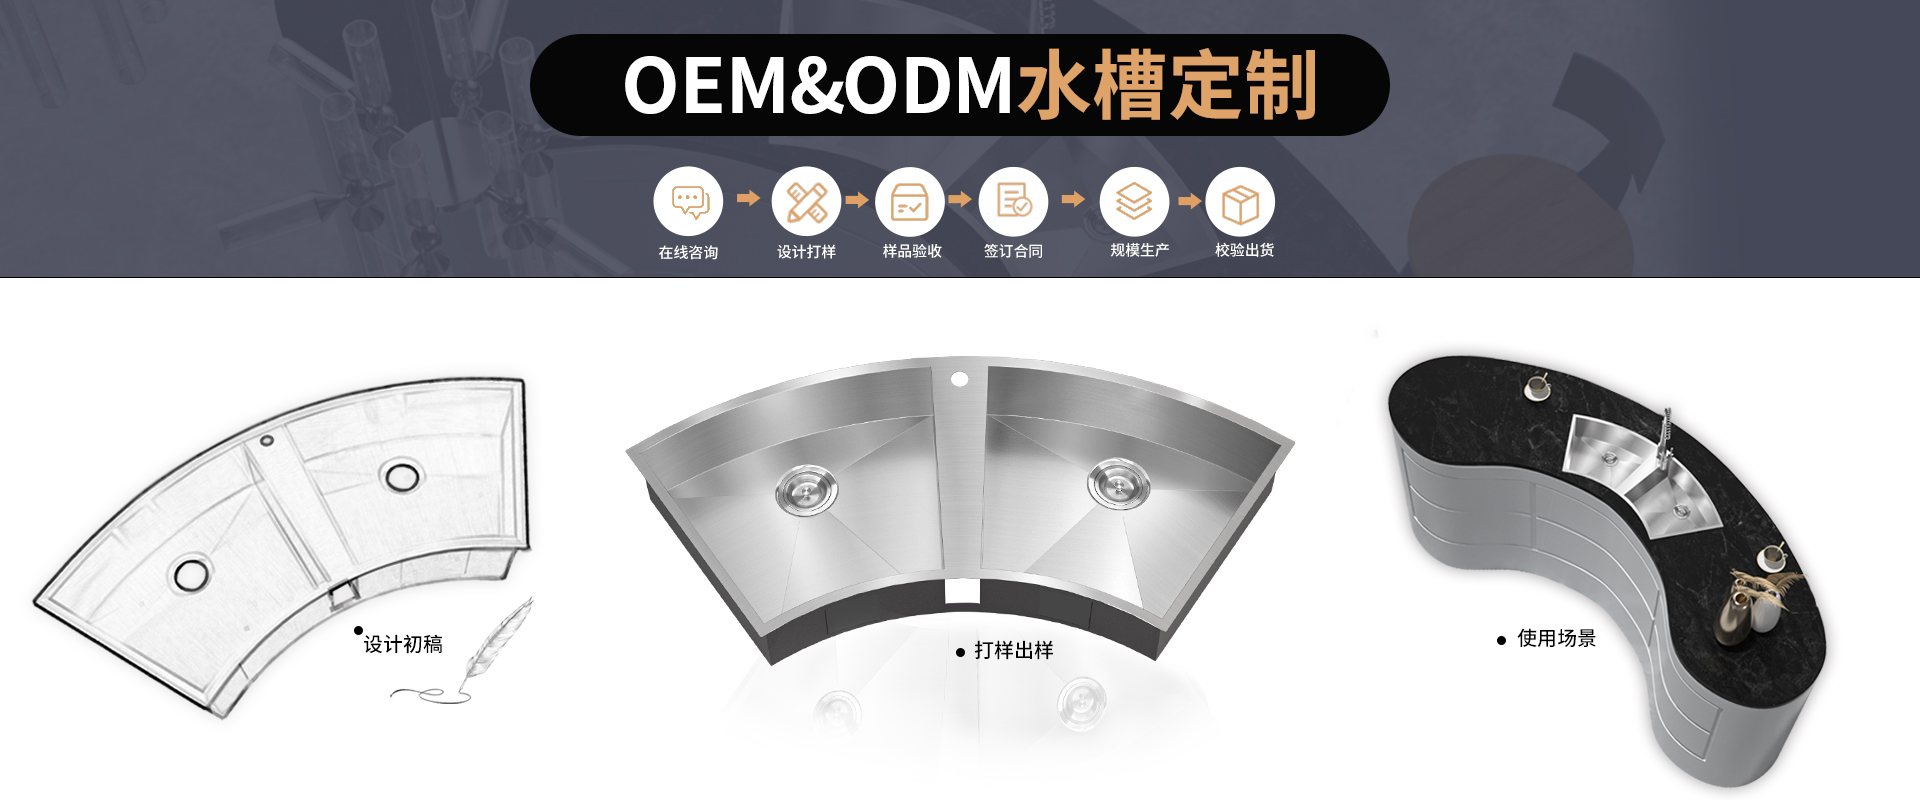 三和不锈钢-26年不锈钢水槽环保厨卫产品OEM定制厂家